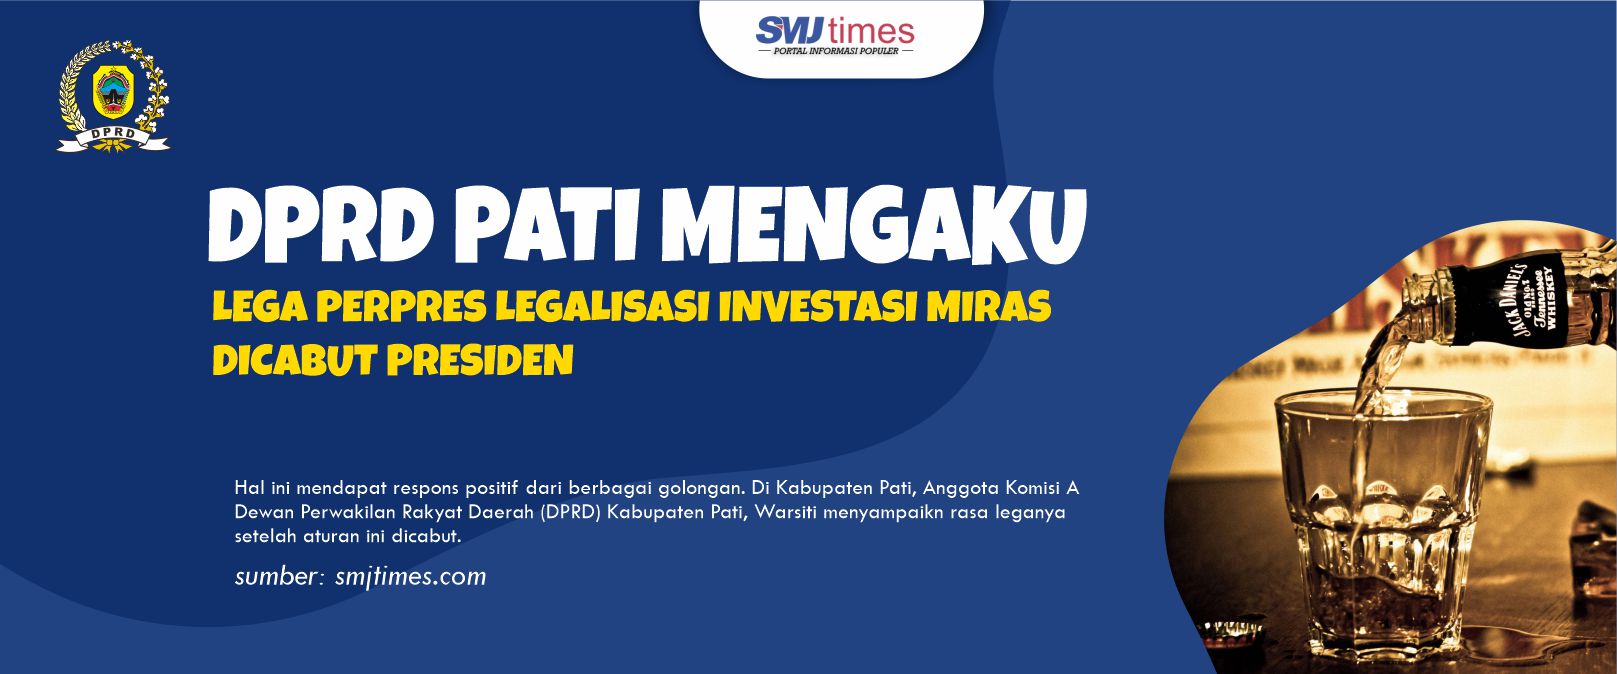 64 DPRD Pati Mengaku Lega Perpres Legalisasi Investasi Miras Dicabut